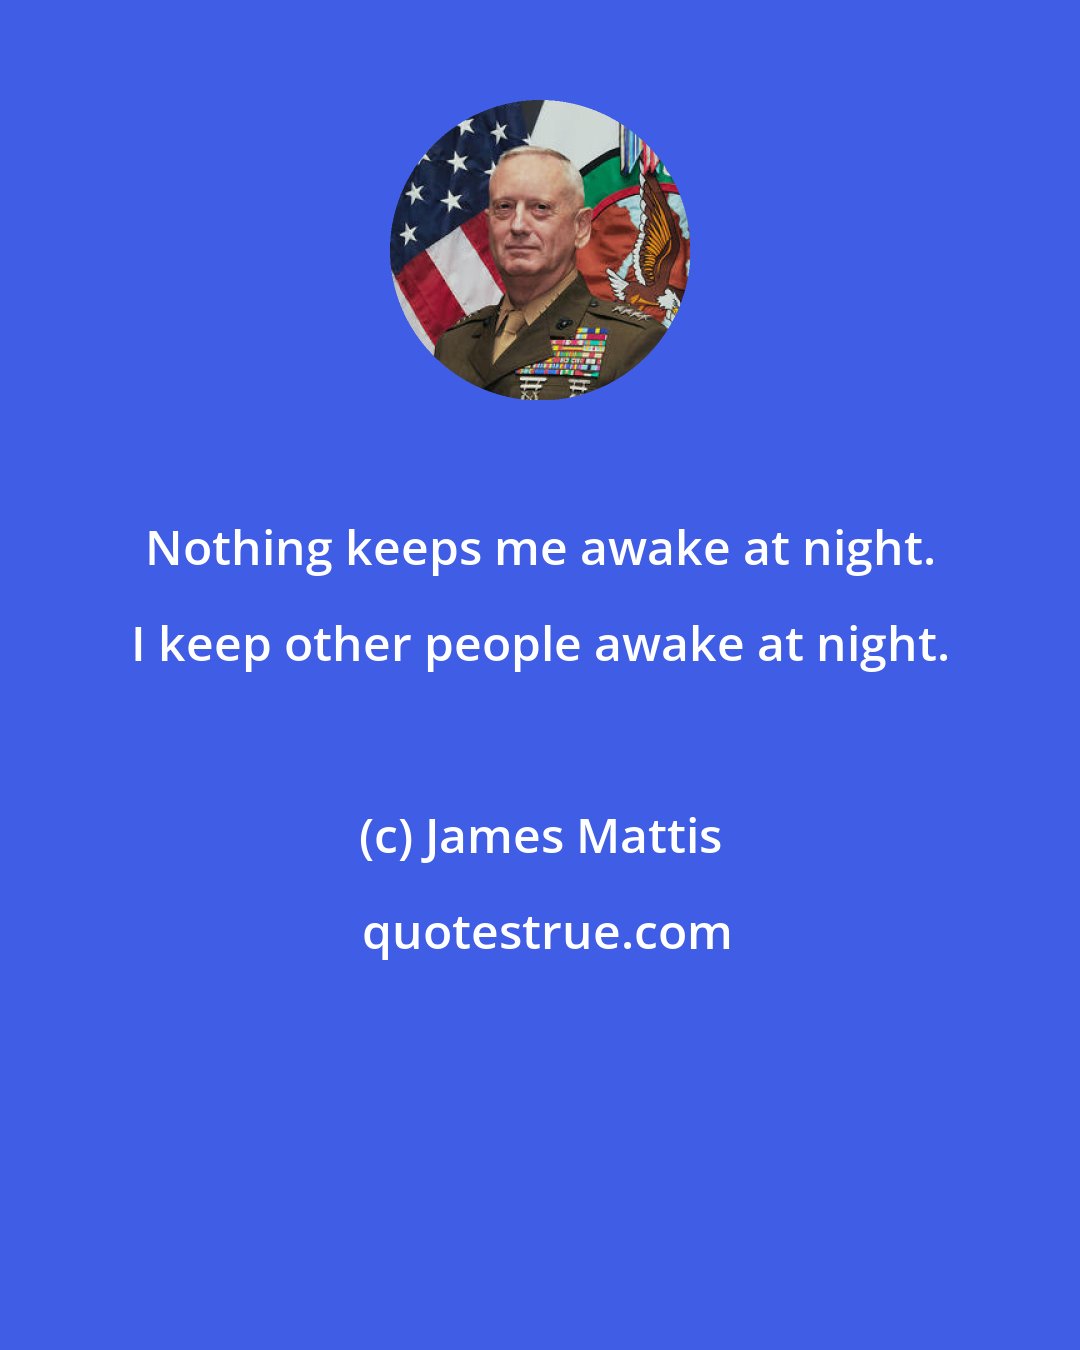 James Mattis: Nothing keeps me awake at night. I keep other people awake at night.